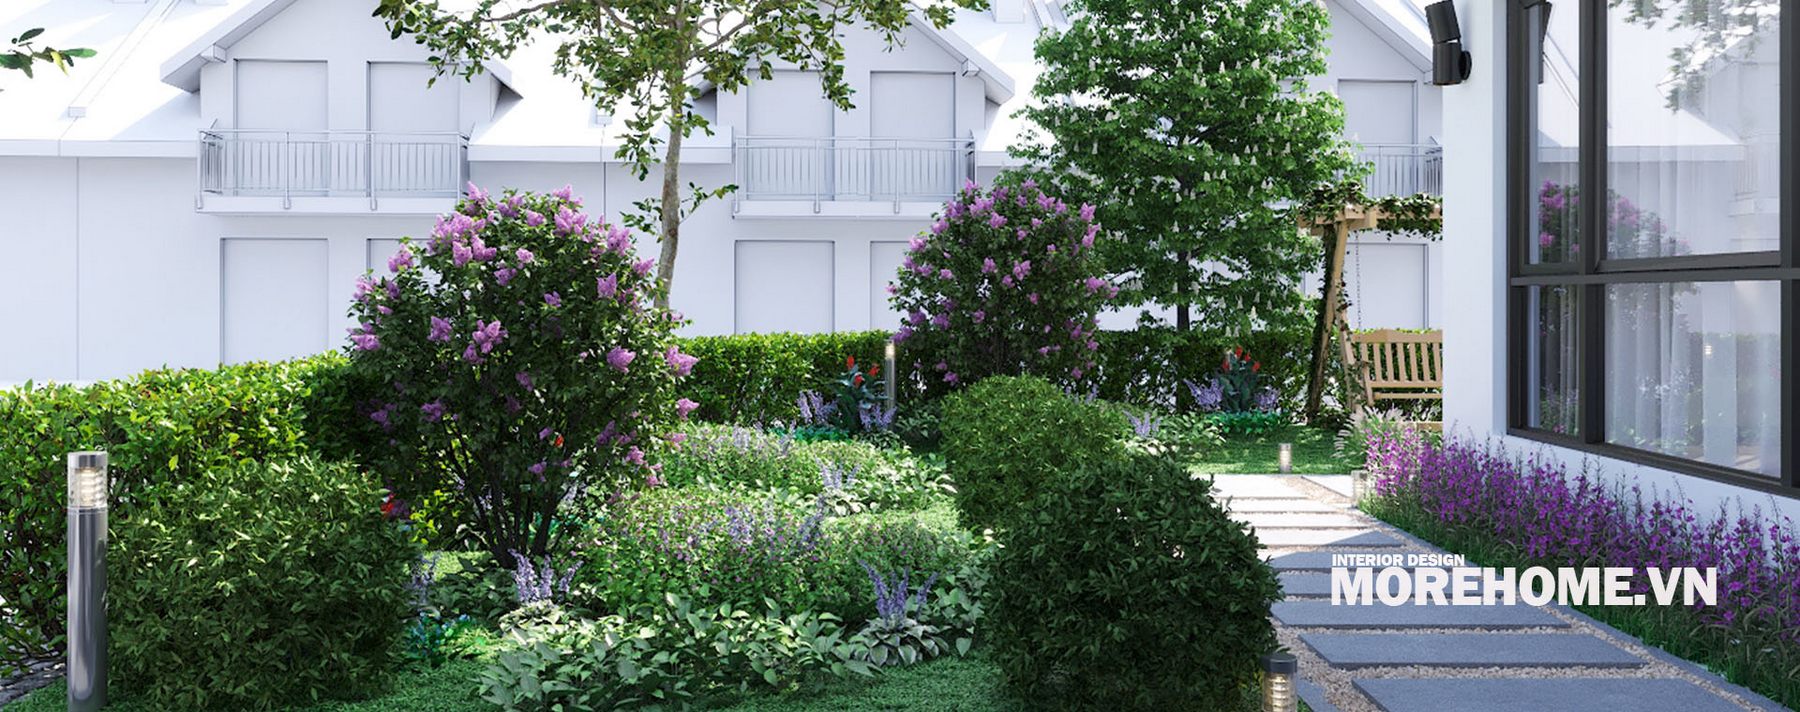 Thiết kế biệt thự vườn đẹp, hiện đại tại ECOPARK HƯNG YÊN - Anh Dũng